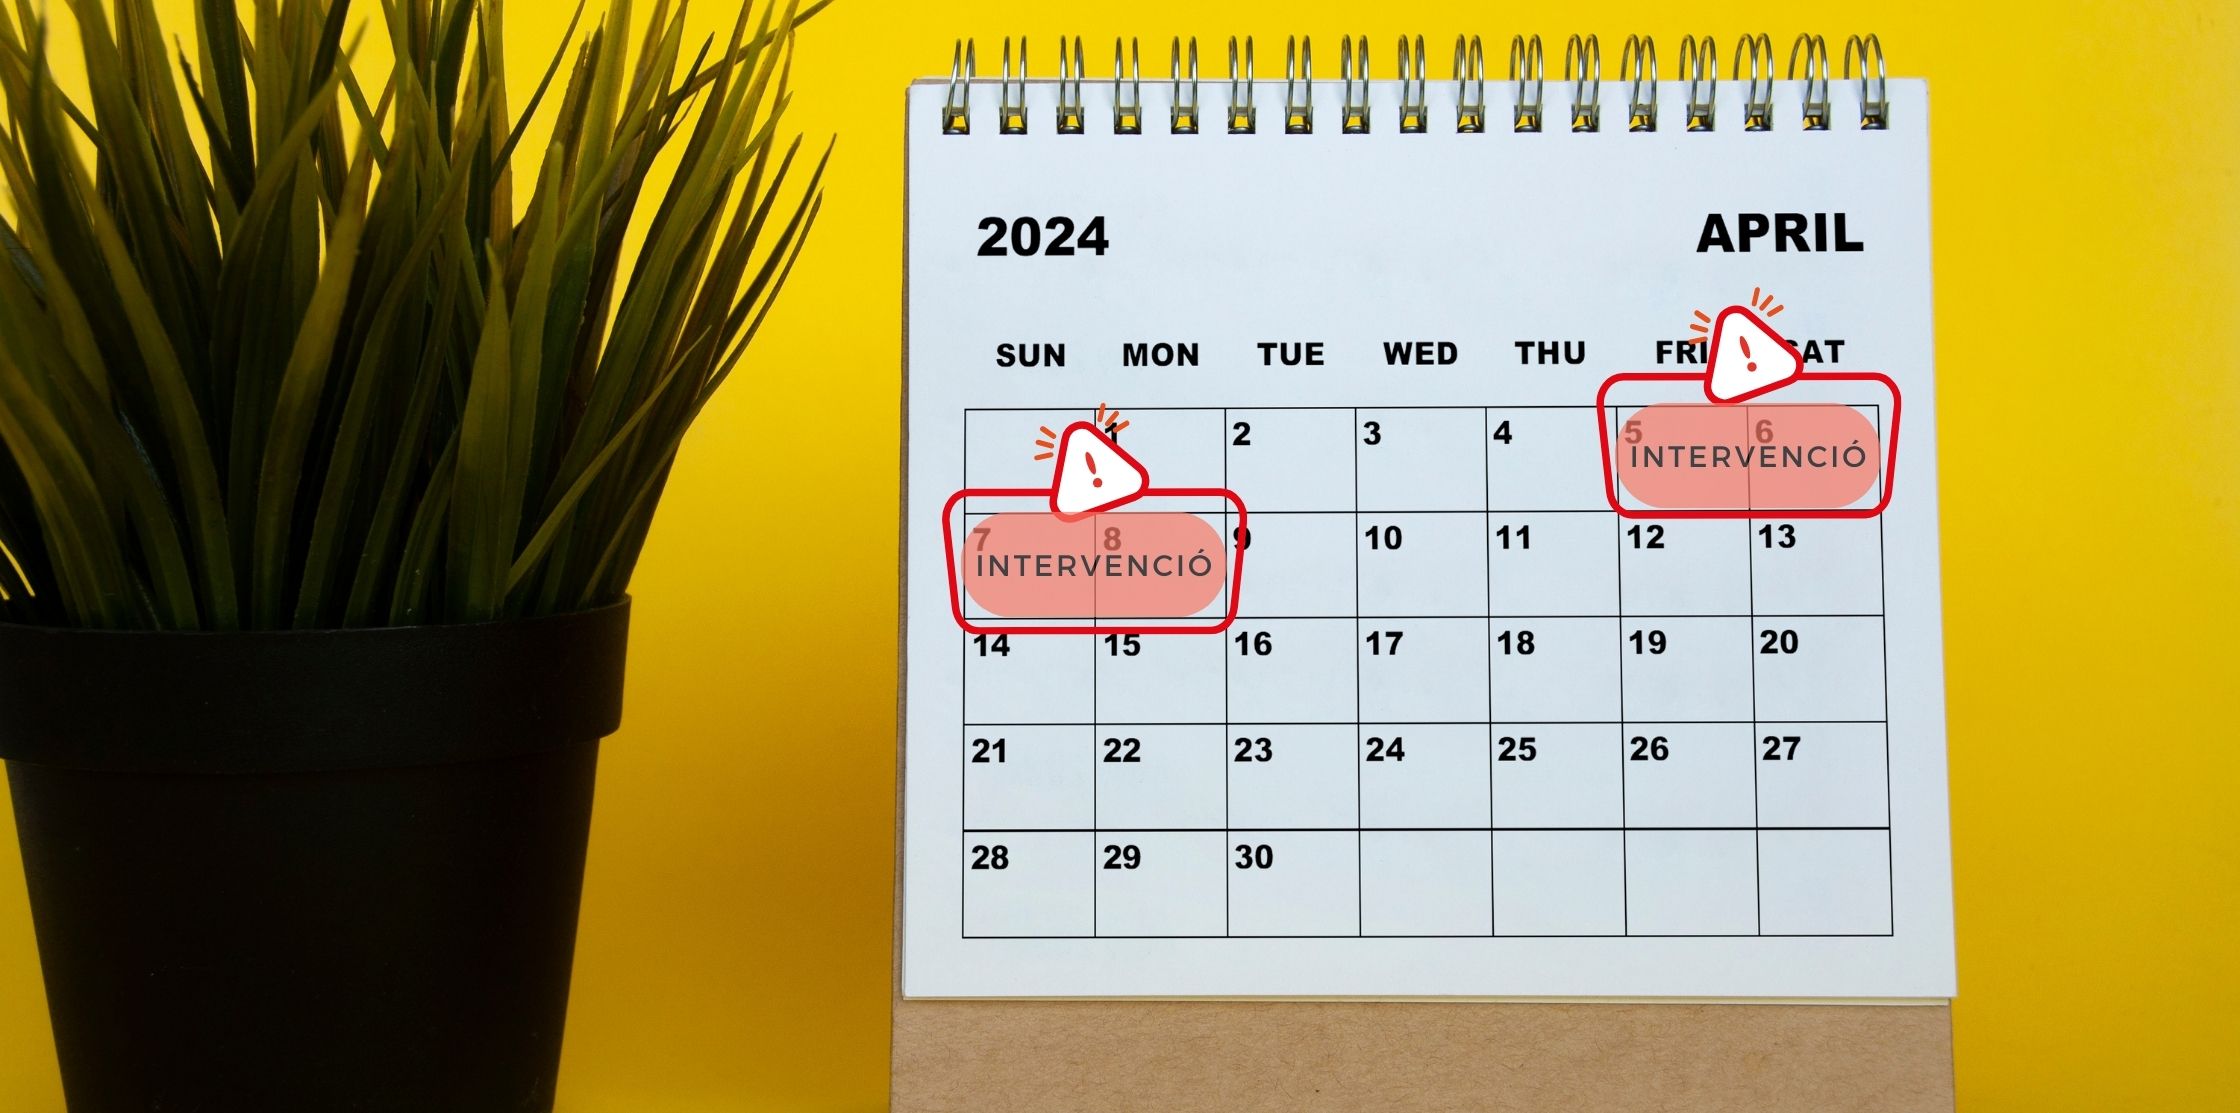 Calendari del mes d'abril de 2024 on hi ha marcat la intervenció que implicarà un tall a bastants serveis AOC, concretament del 5 al 8 d'abril.